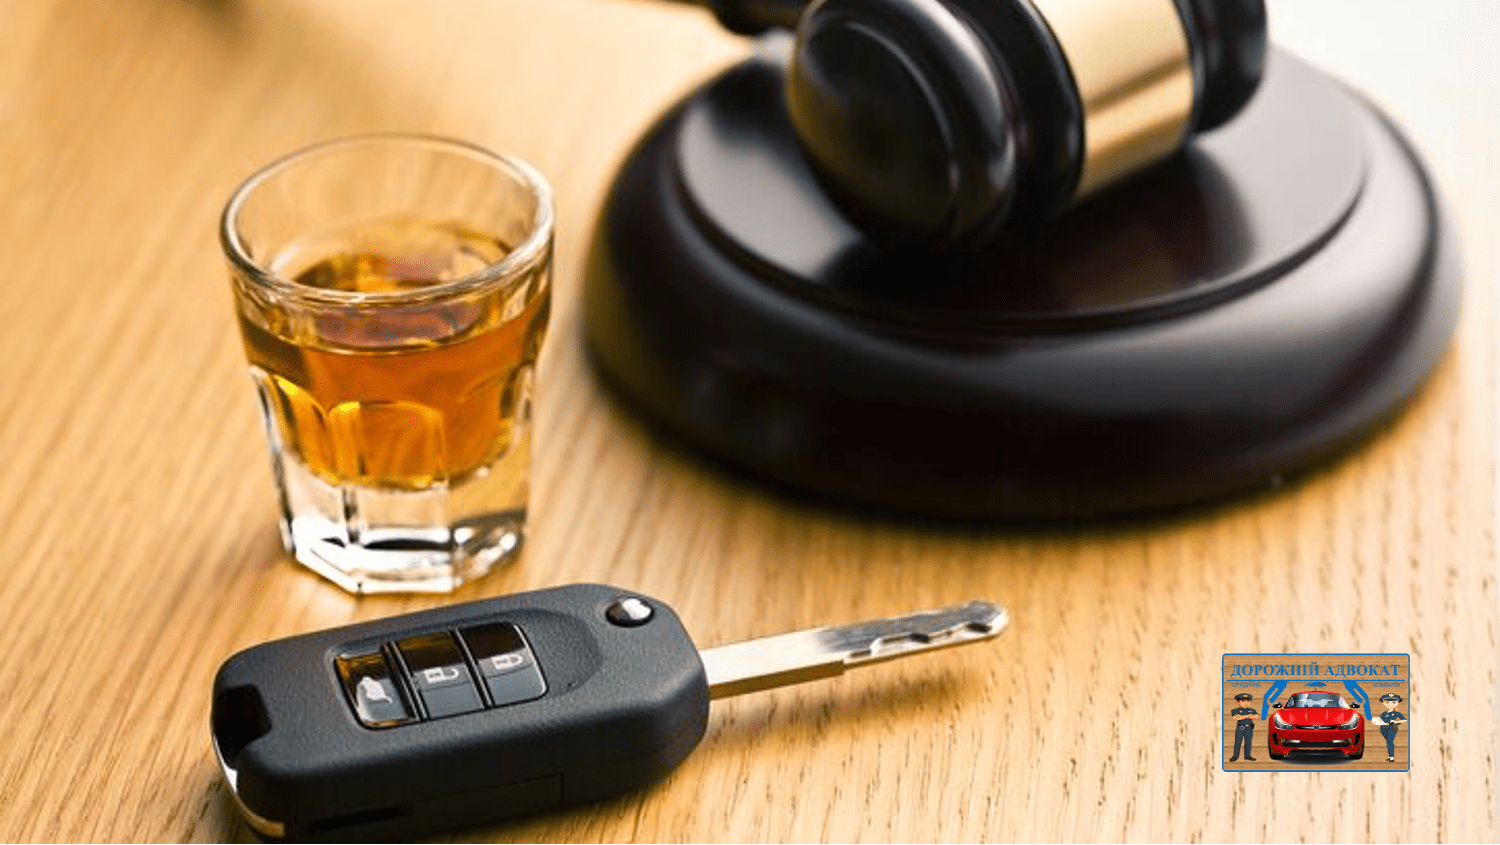 керування в стані алкогольного спяніння стаття 130 ДТП стягнути з винної особи моральна шкода потерпіла винний водій